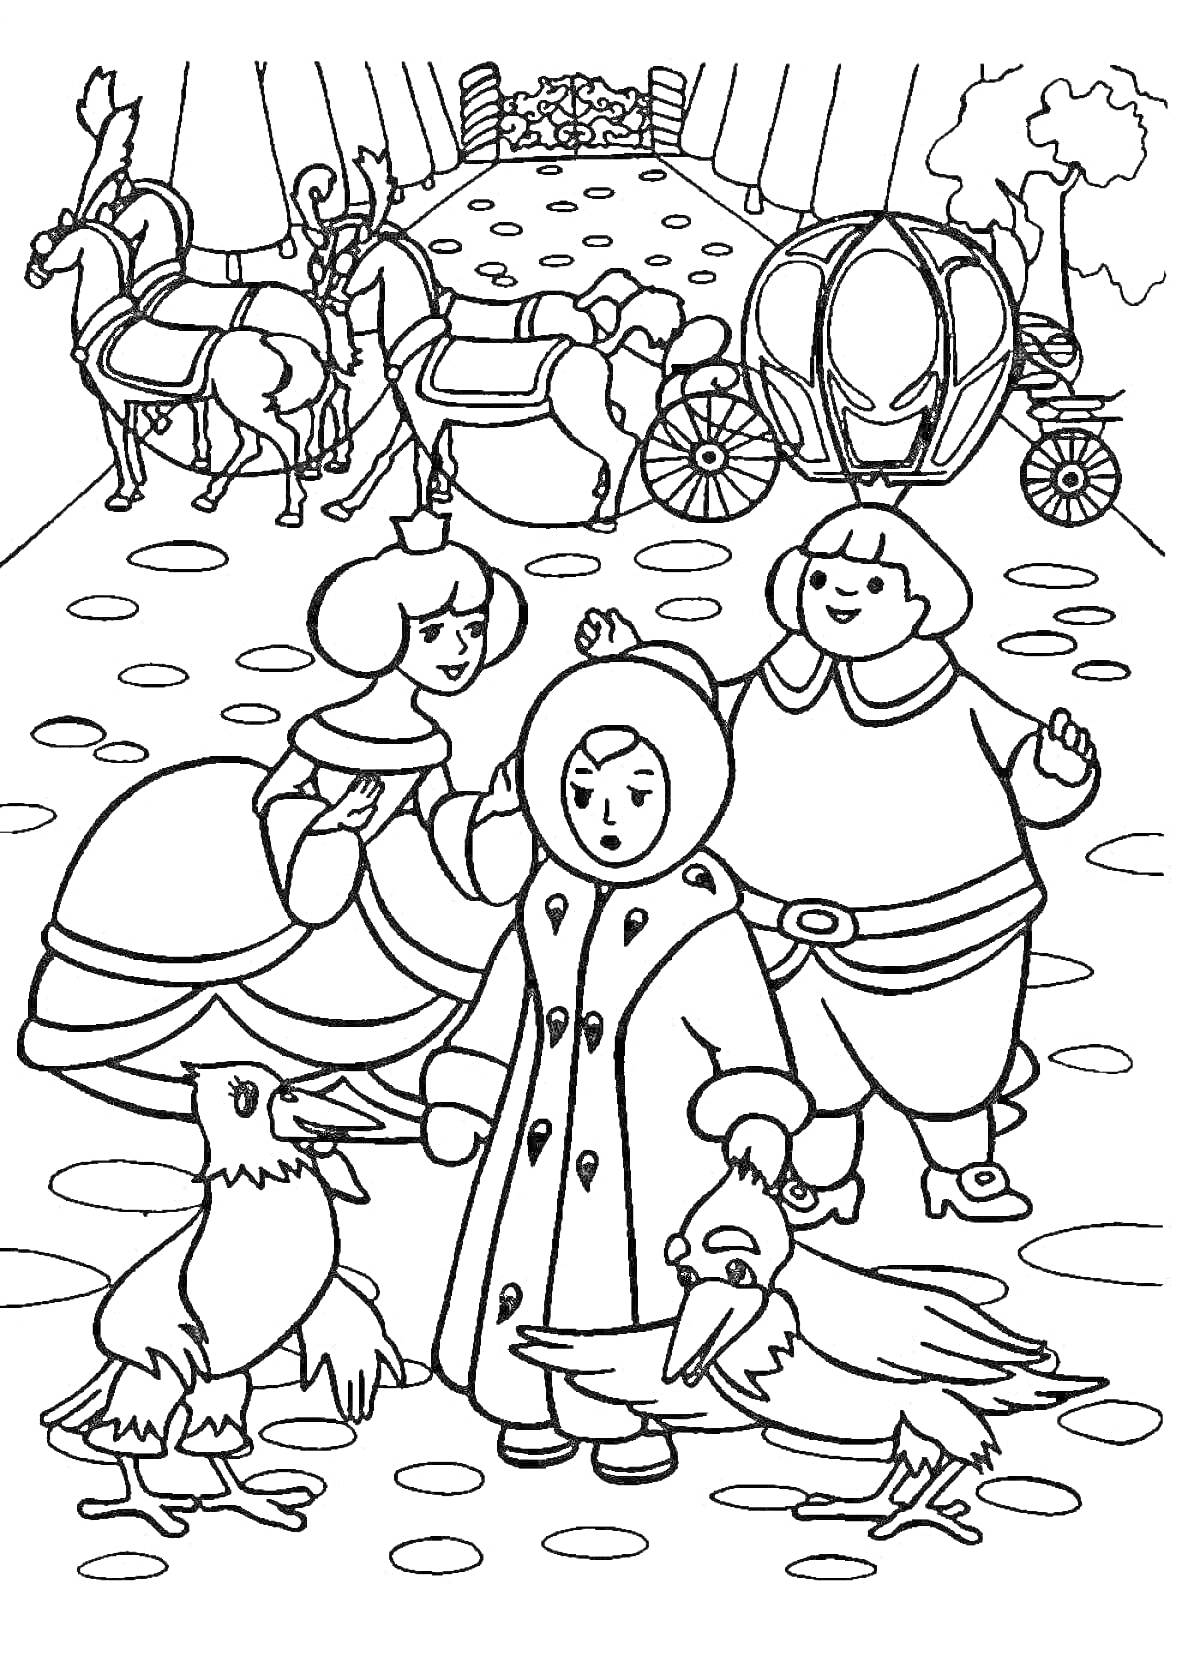 Раскраска Люди в средневековой одежде, повозка с лошадями на фоне, зимняя одежда, гуси на переднем плане